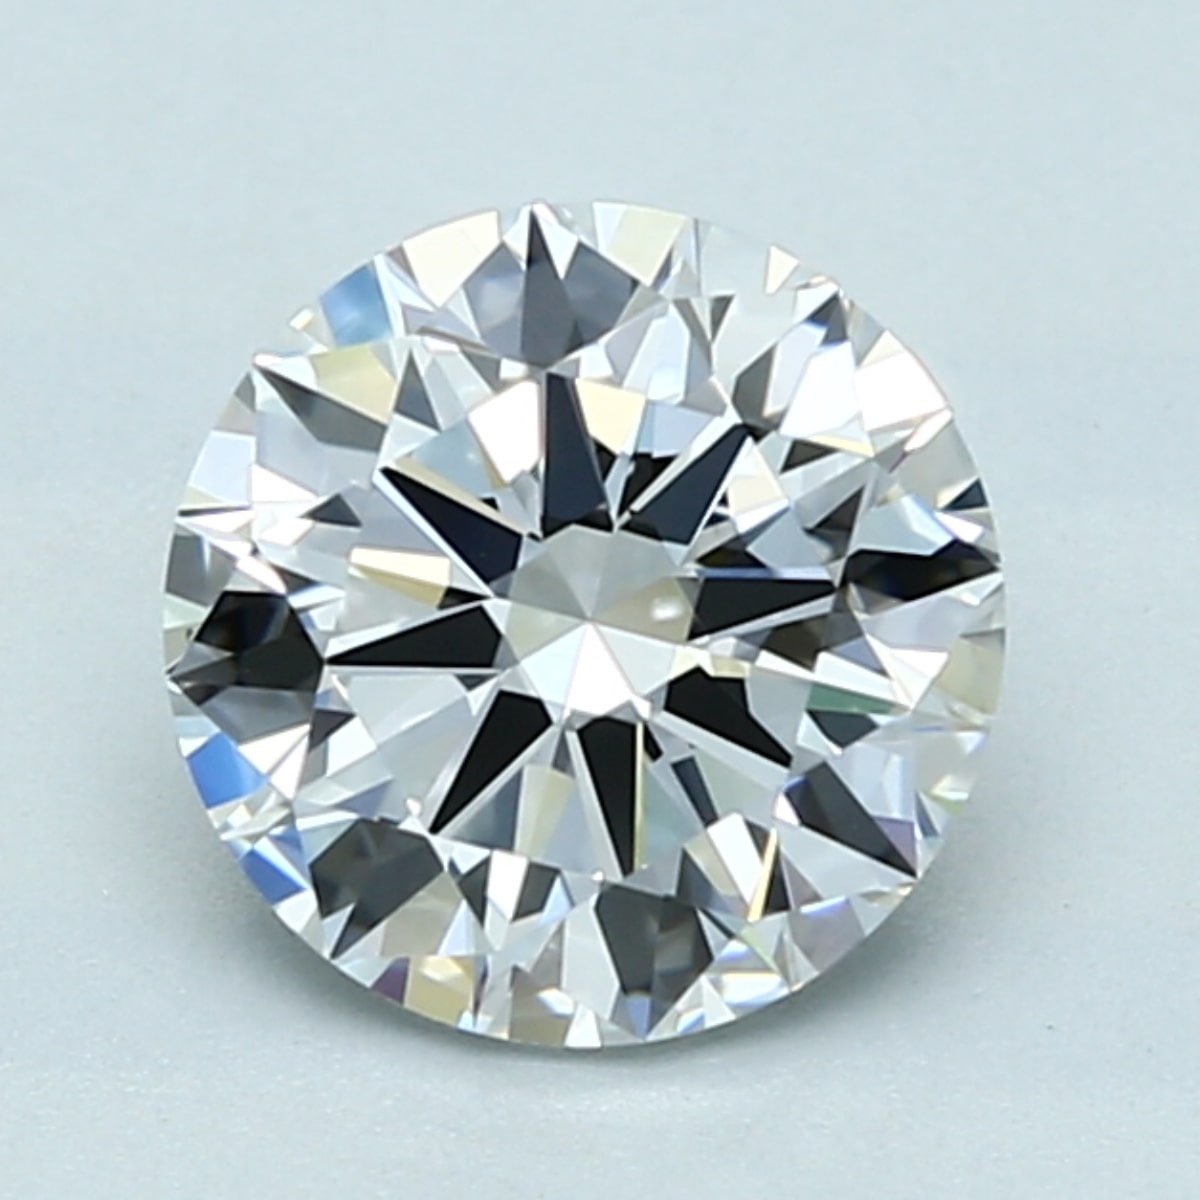 1.5 carat E color diamond